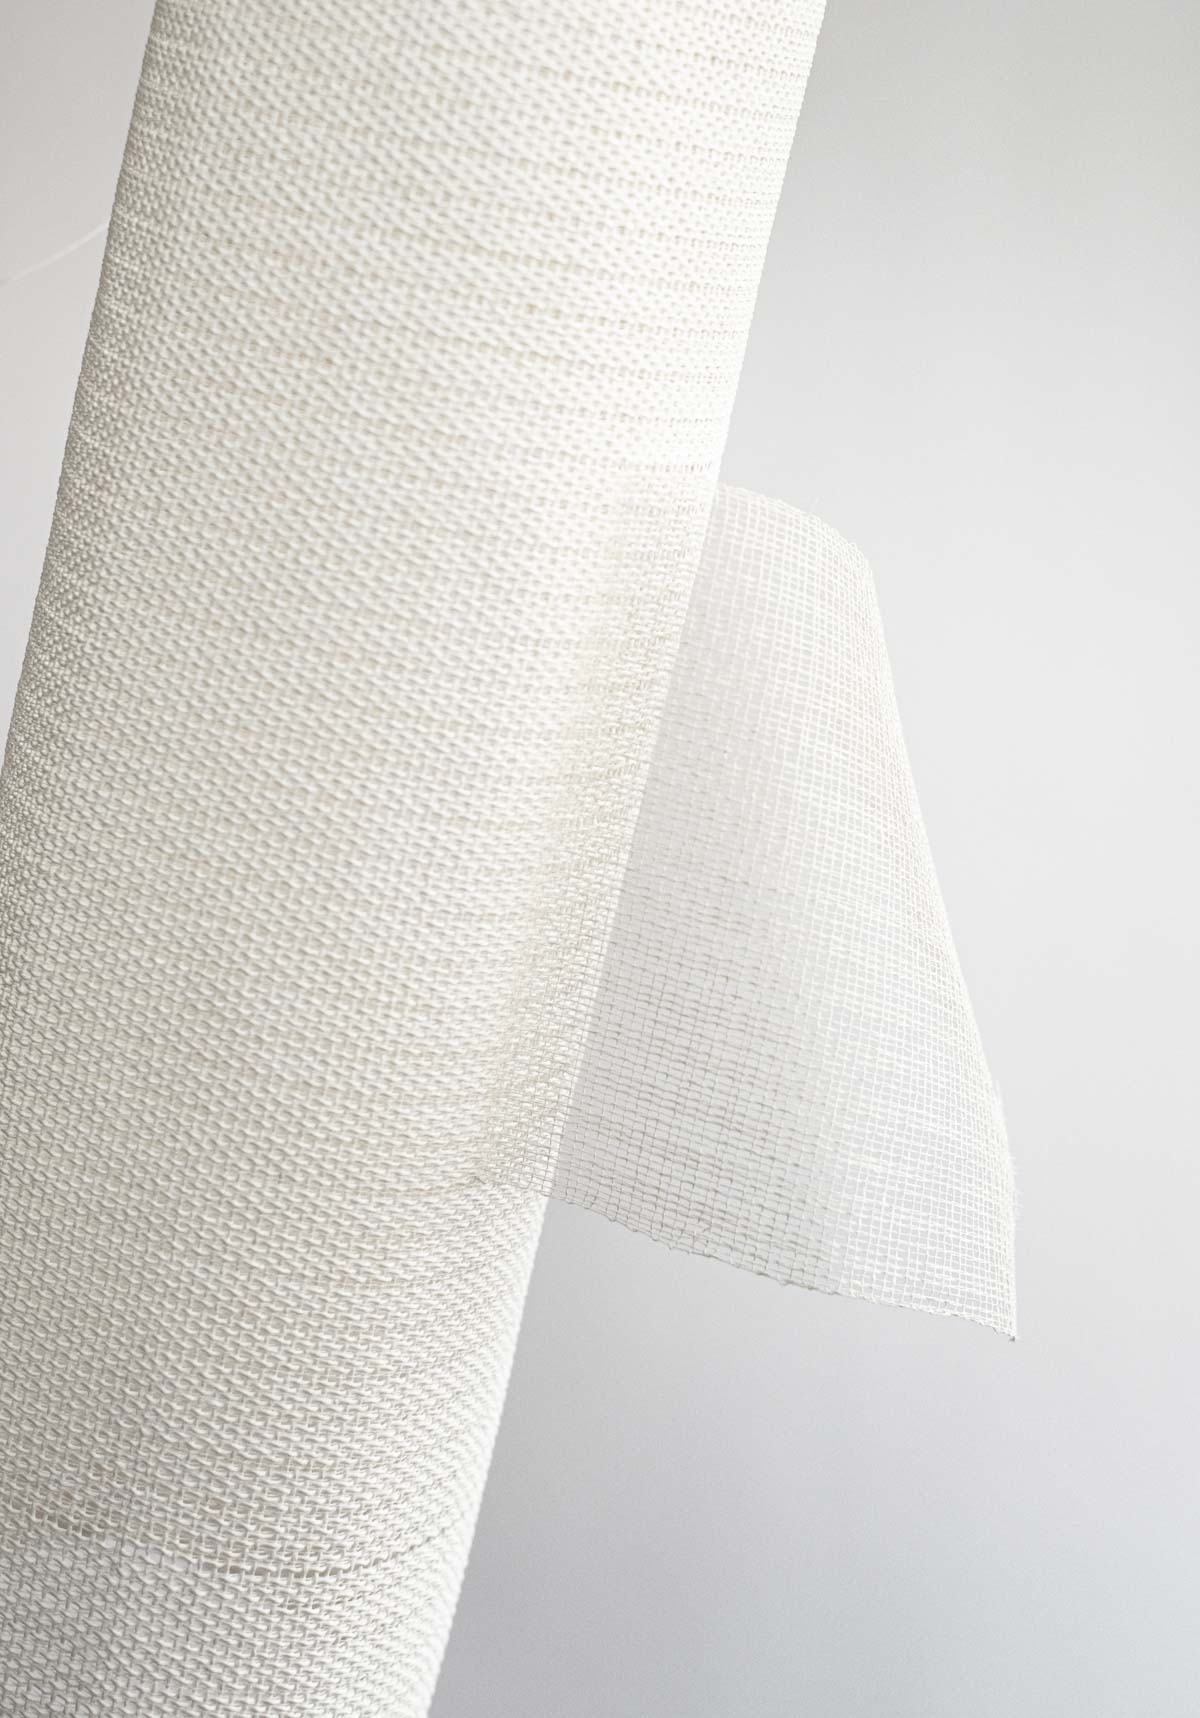 Tubolare Con Strappo Perpendicolare (2021) 30x12,5x11 cm Paper yarn